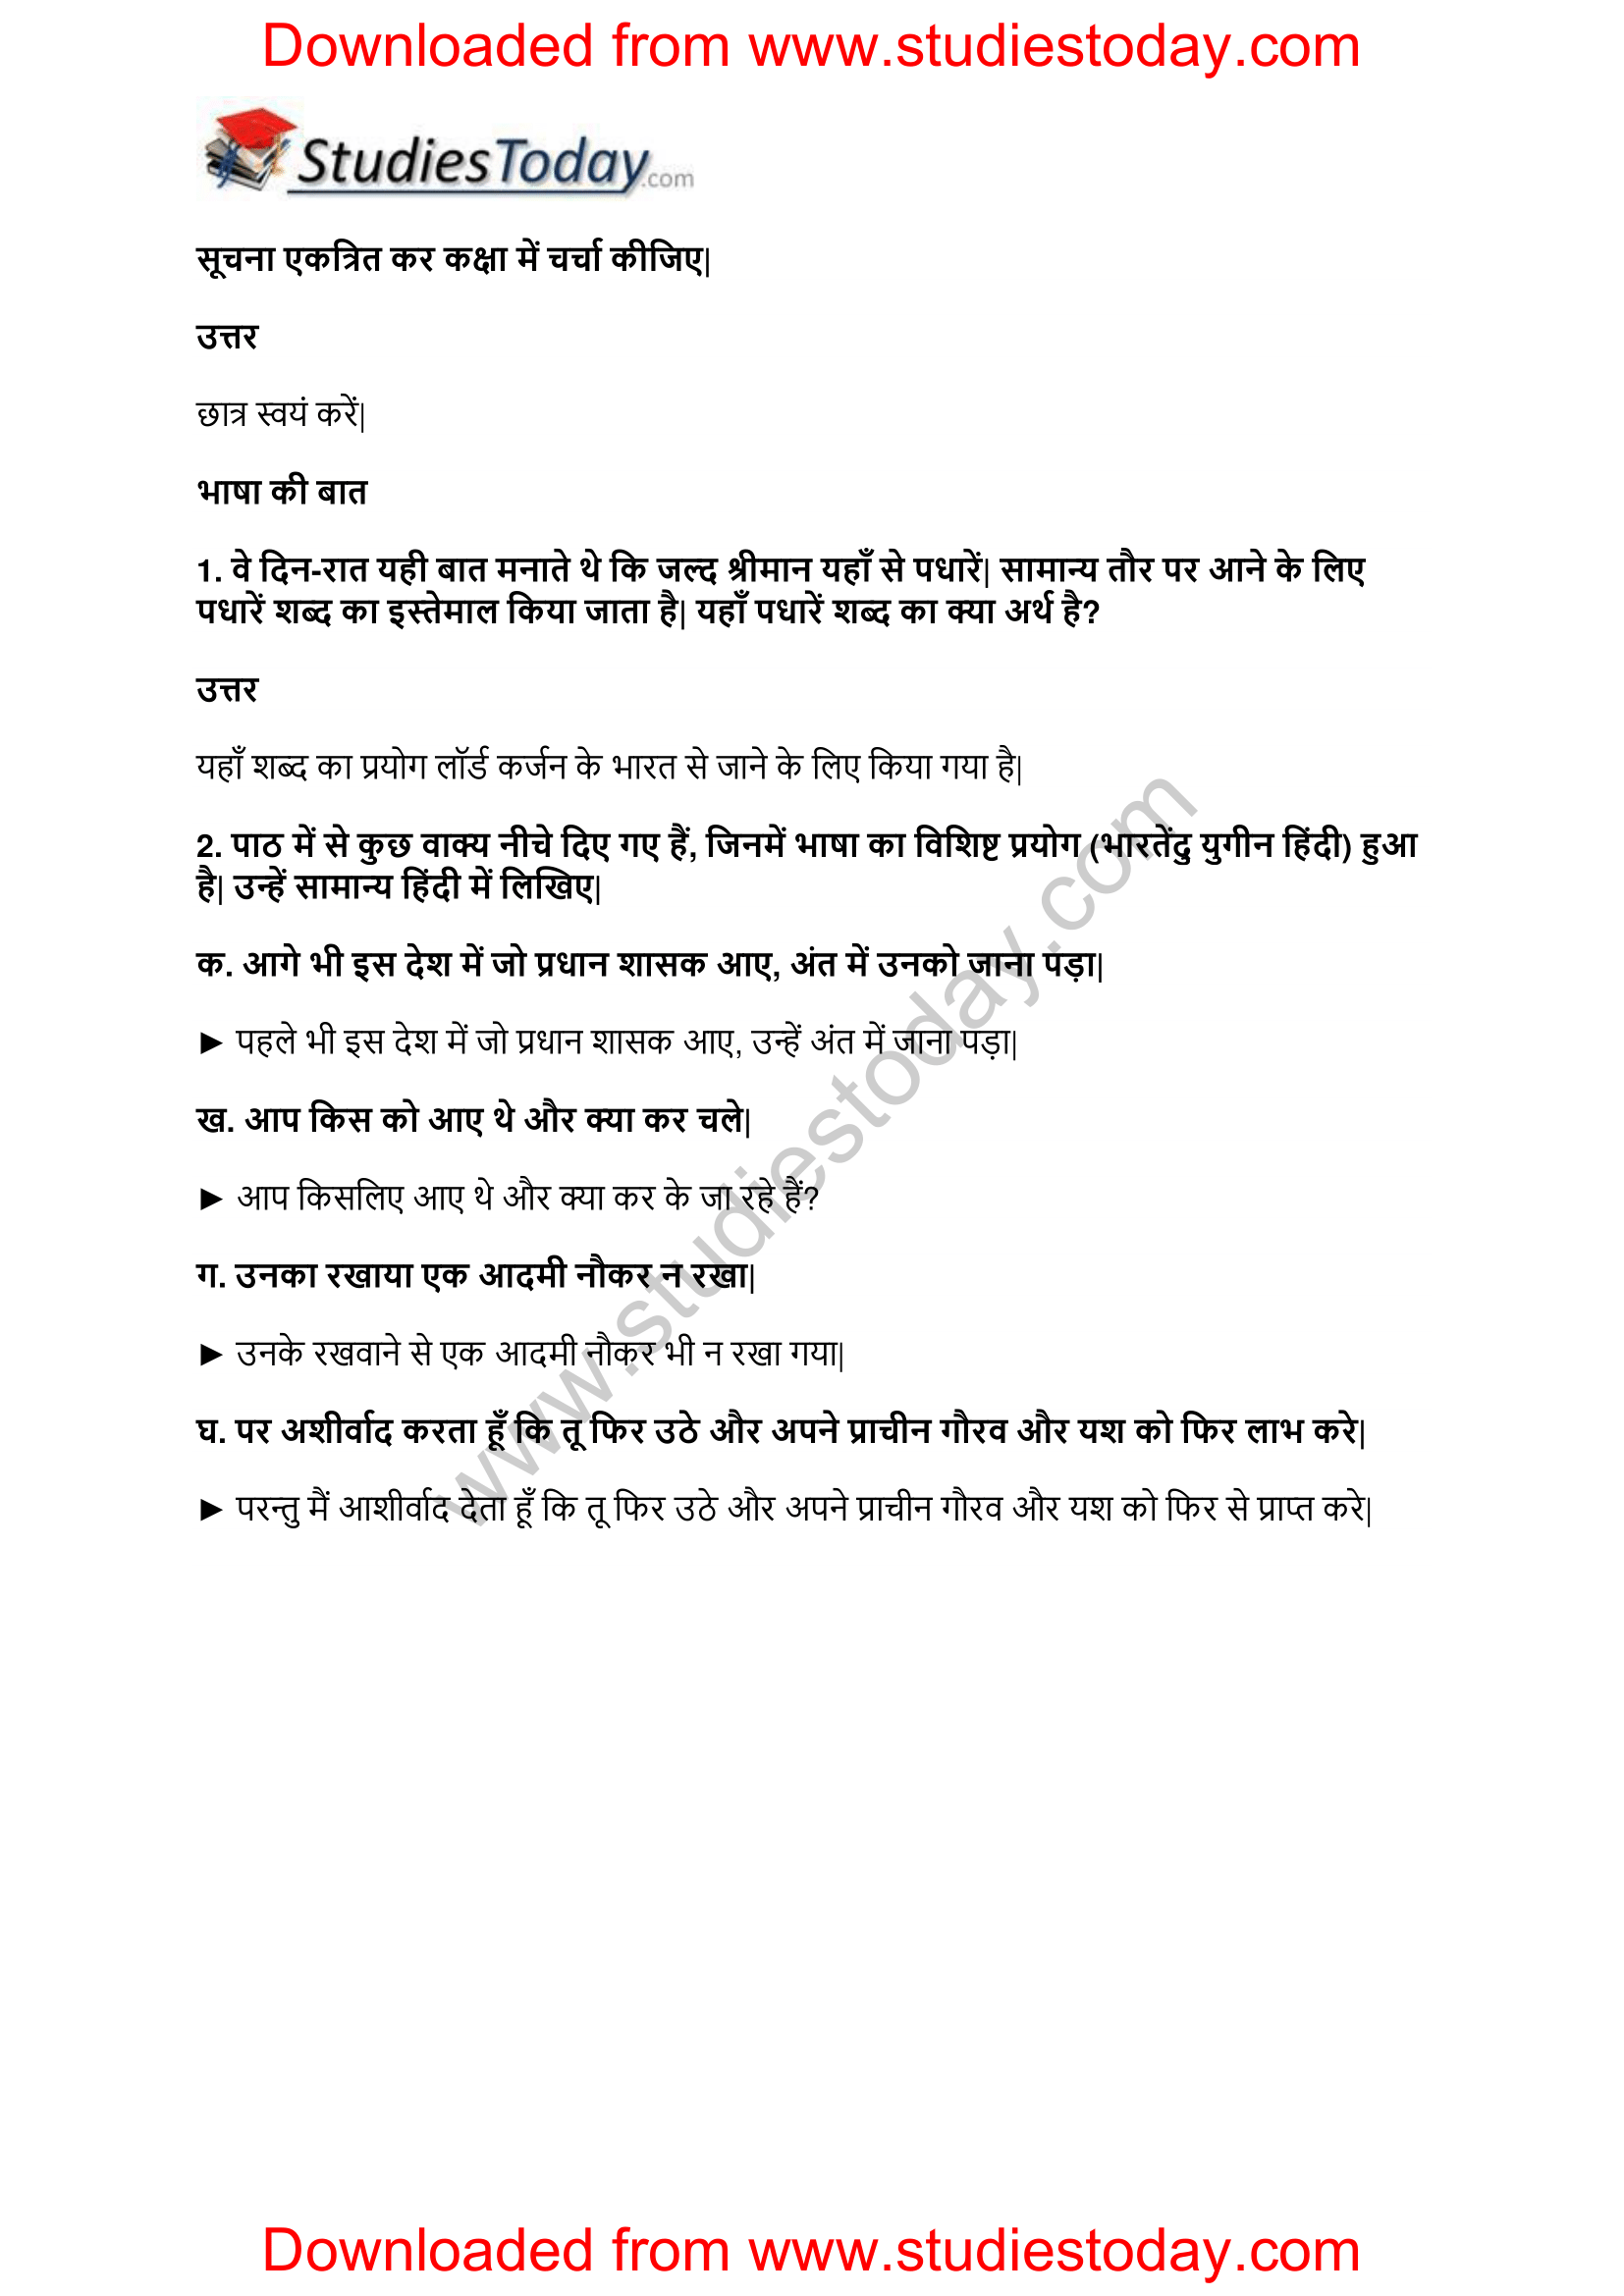 NCERT-Solutions-Class-11-Hindi-Aroh-Balmukund-3